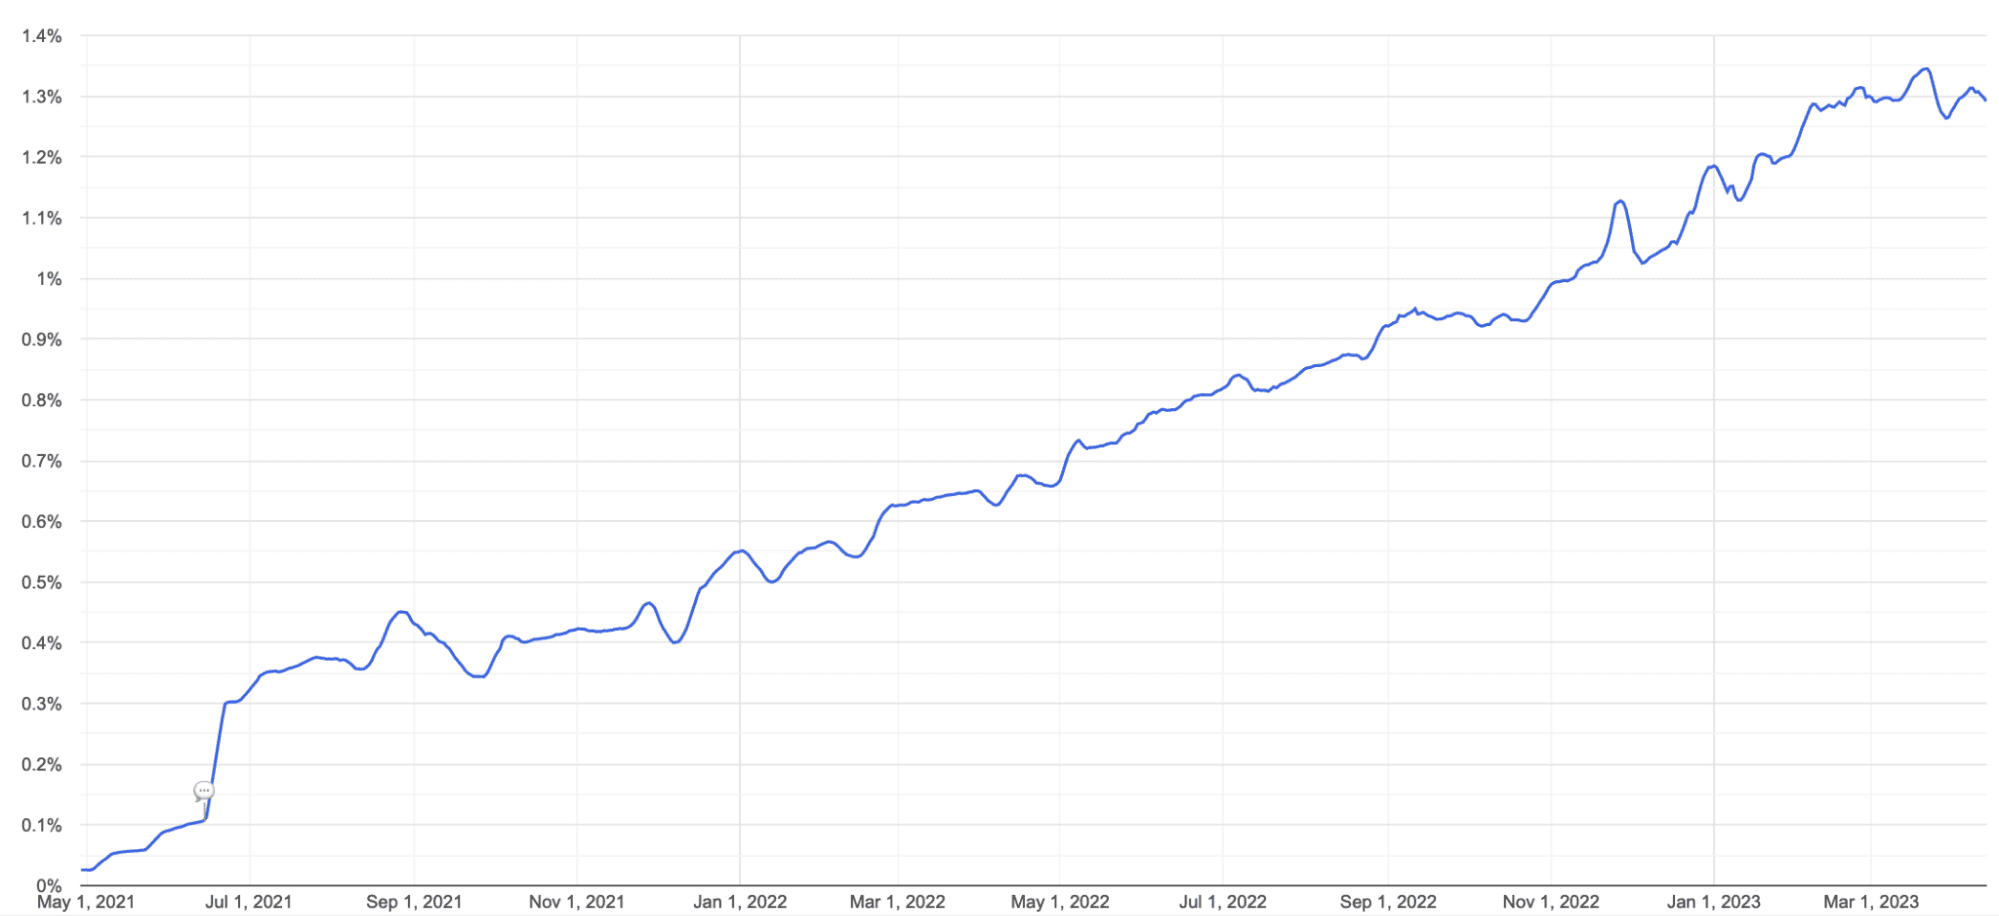 2021년 5월부터 2023년 3월까지 Chrome에서의 AVIF 사용량 선 그래프 지지율은 0% 에서 1.4% 미만으로 꾸준히 증가했습니다.